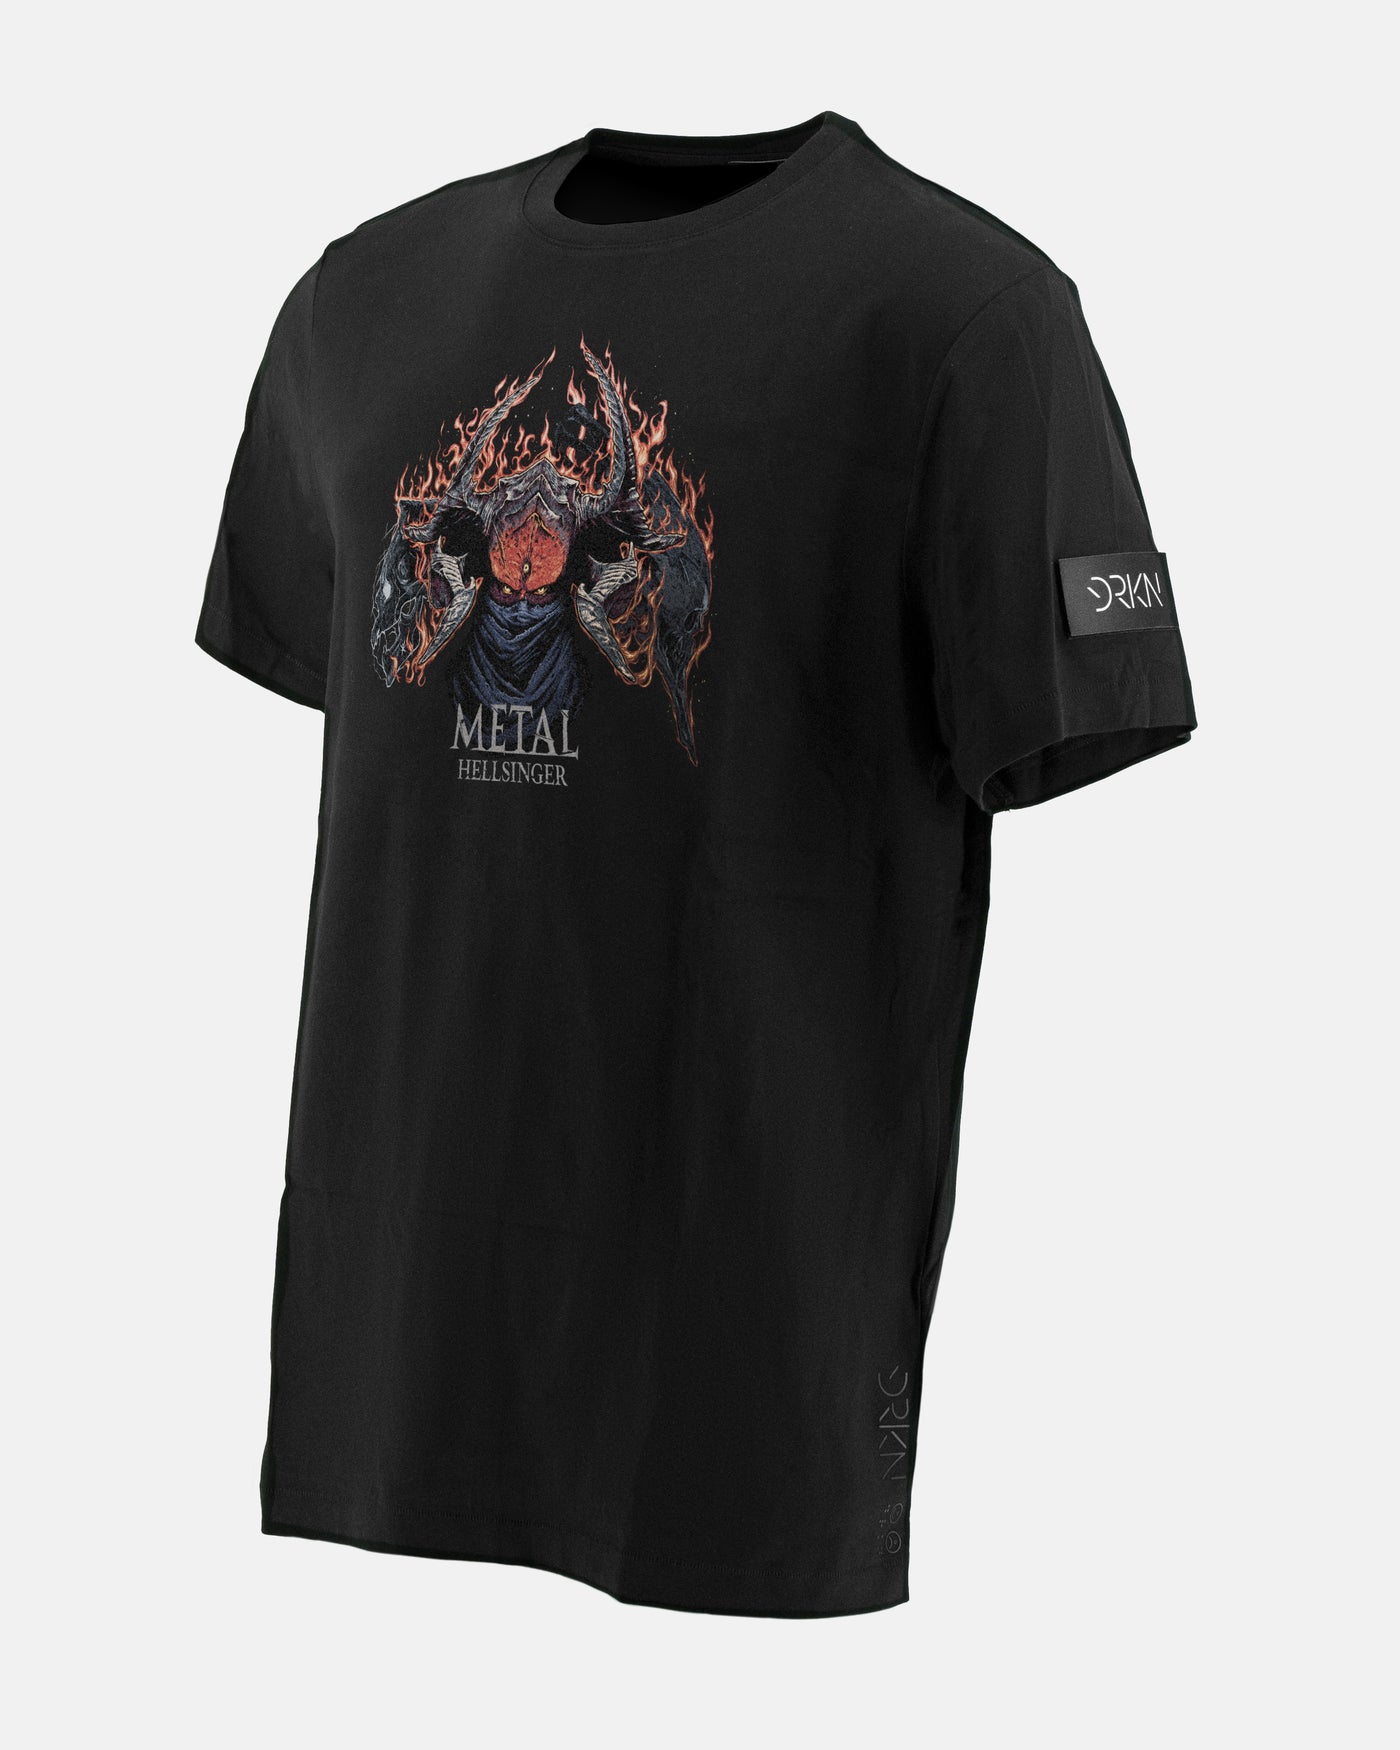 Metal: Hellsinger Tour Men's Black T-Shirt